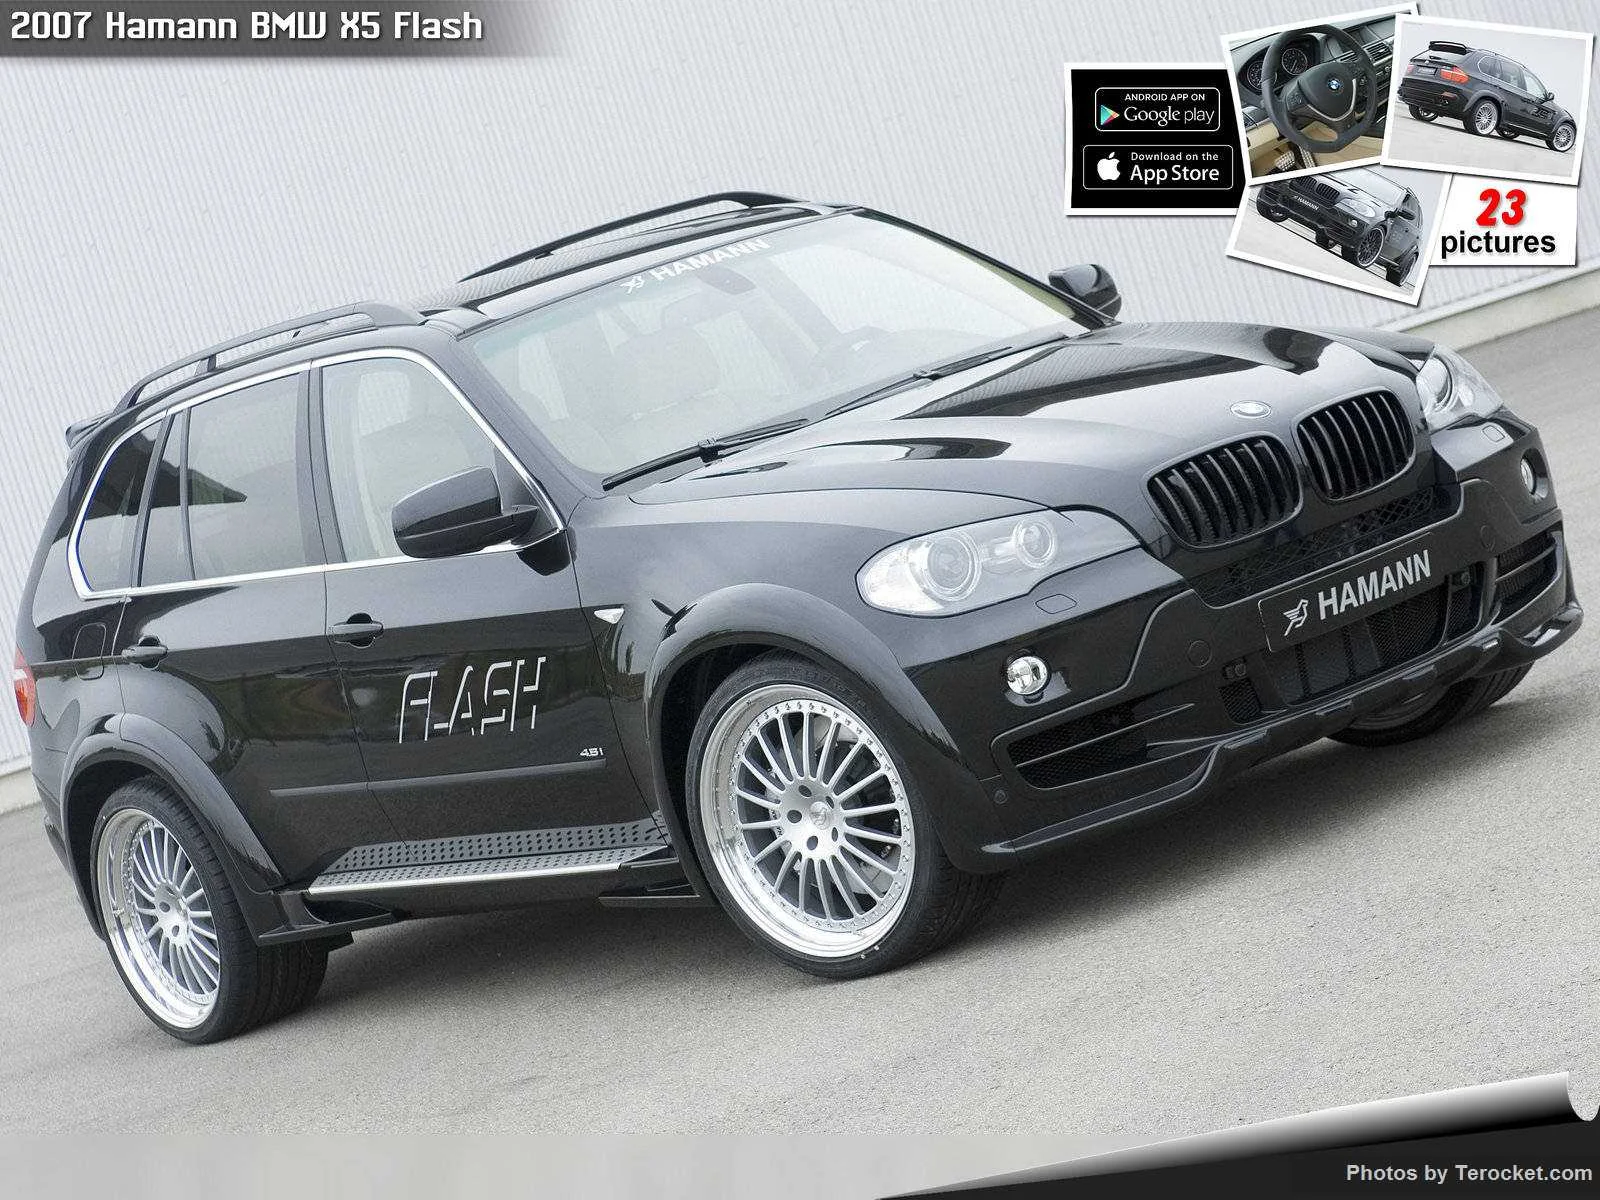 Hình ảnh xe ô tô Hamann BMW X5 Flash 2007 & nội ngoại thất